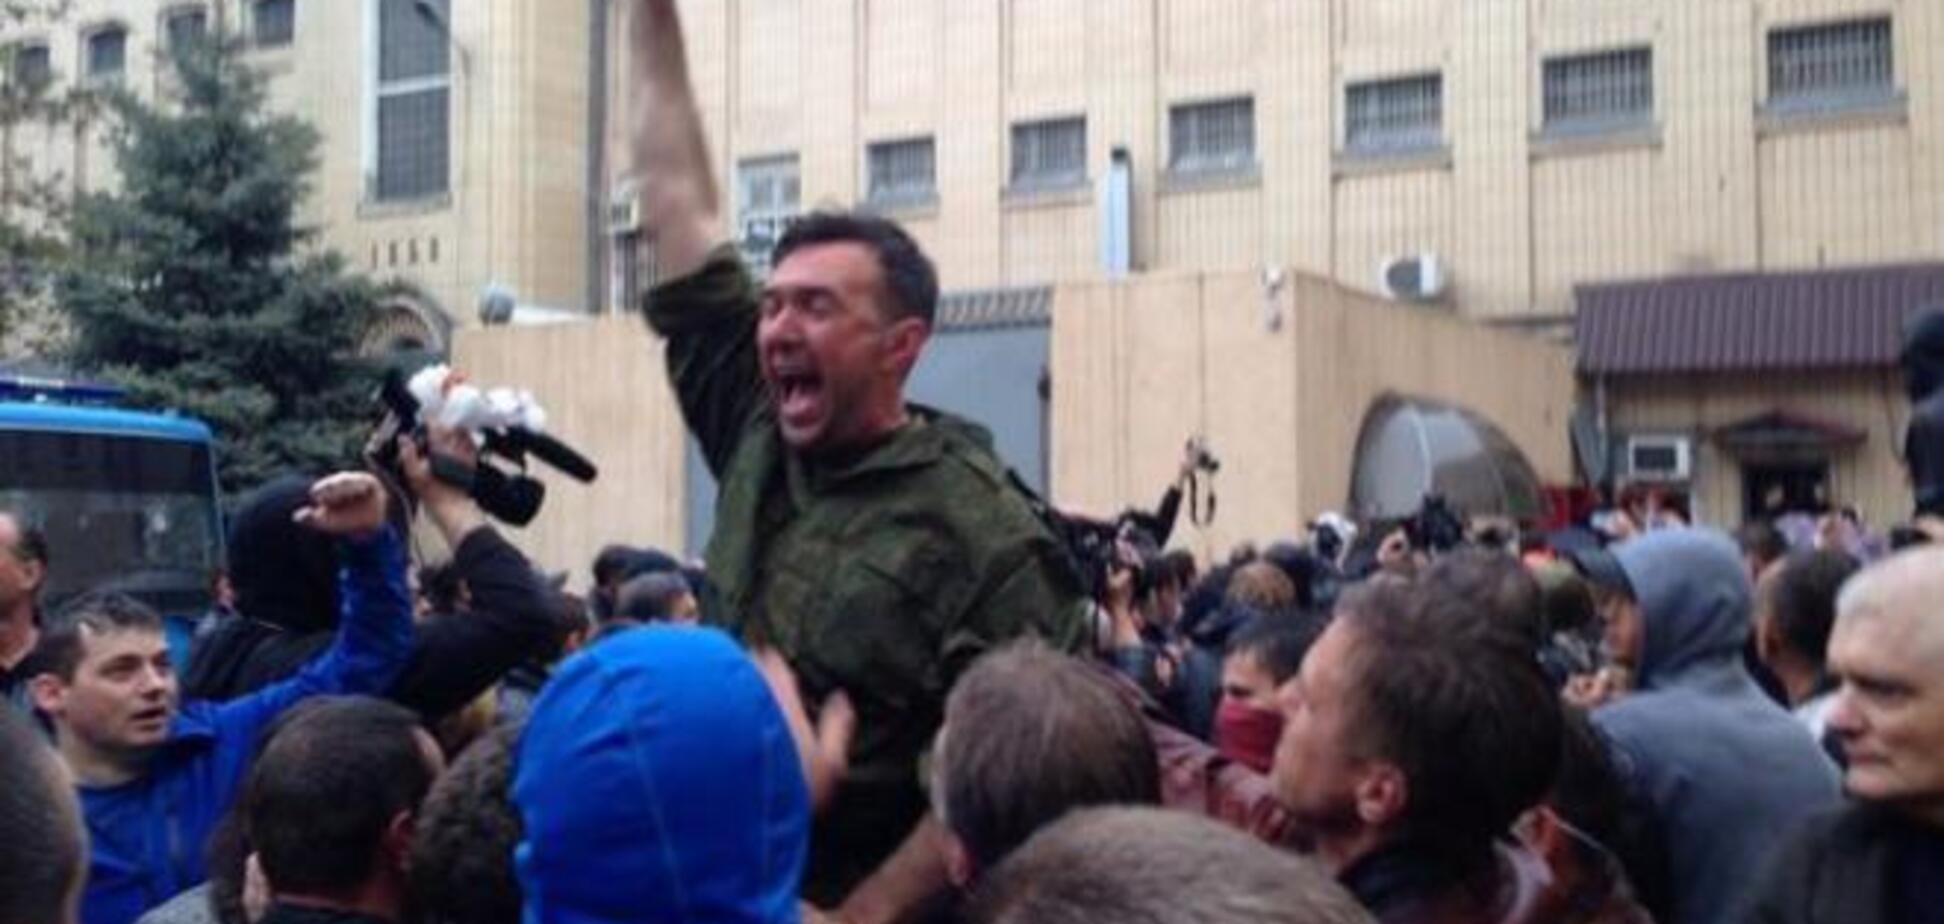 Пашинский пригрозил замгенпрокурору, освободившему задержанных в Одессе, тюрьмой